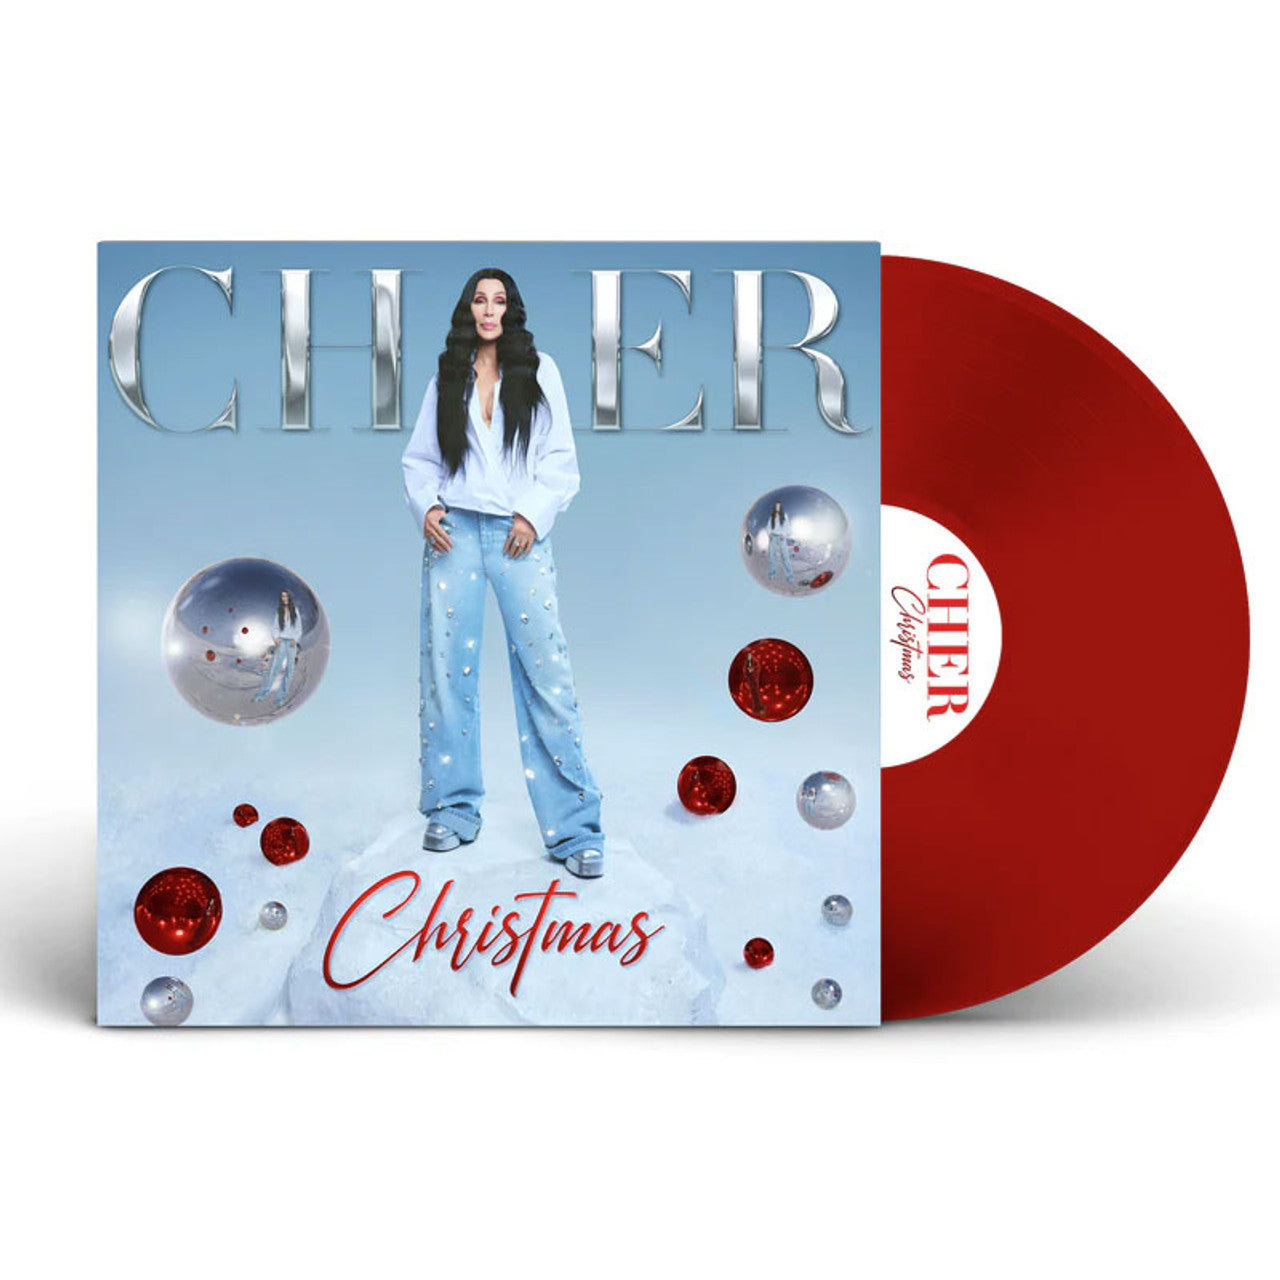 Order Cher - Christmas (Ruby Red Vinyl)